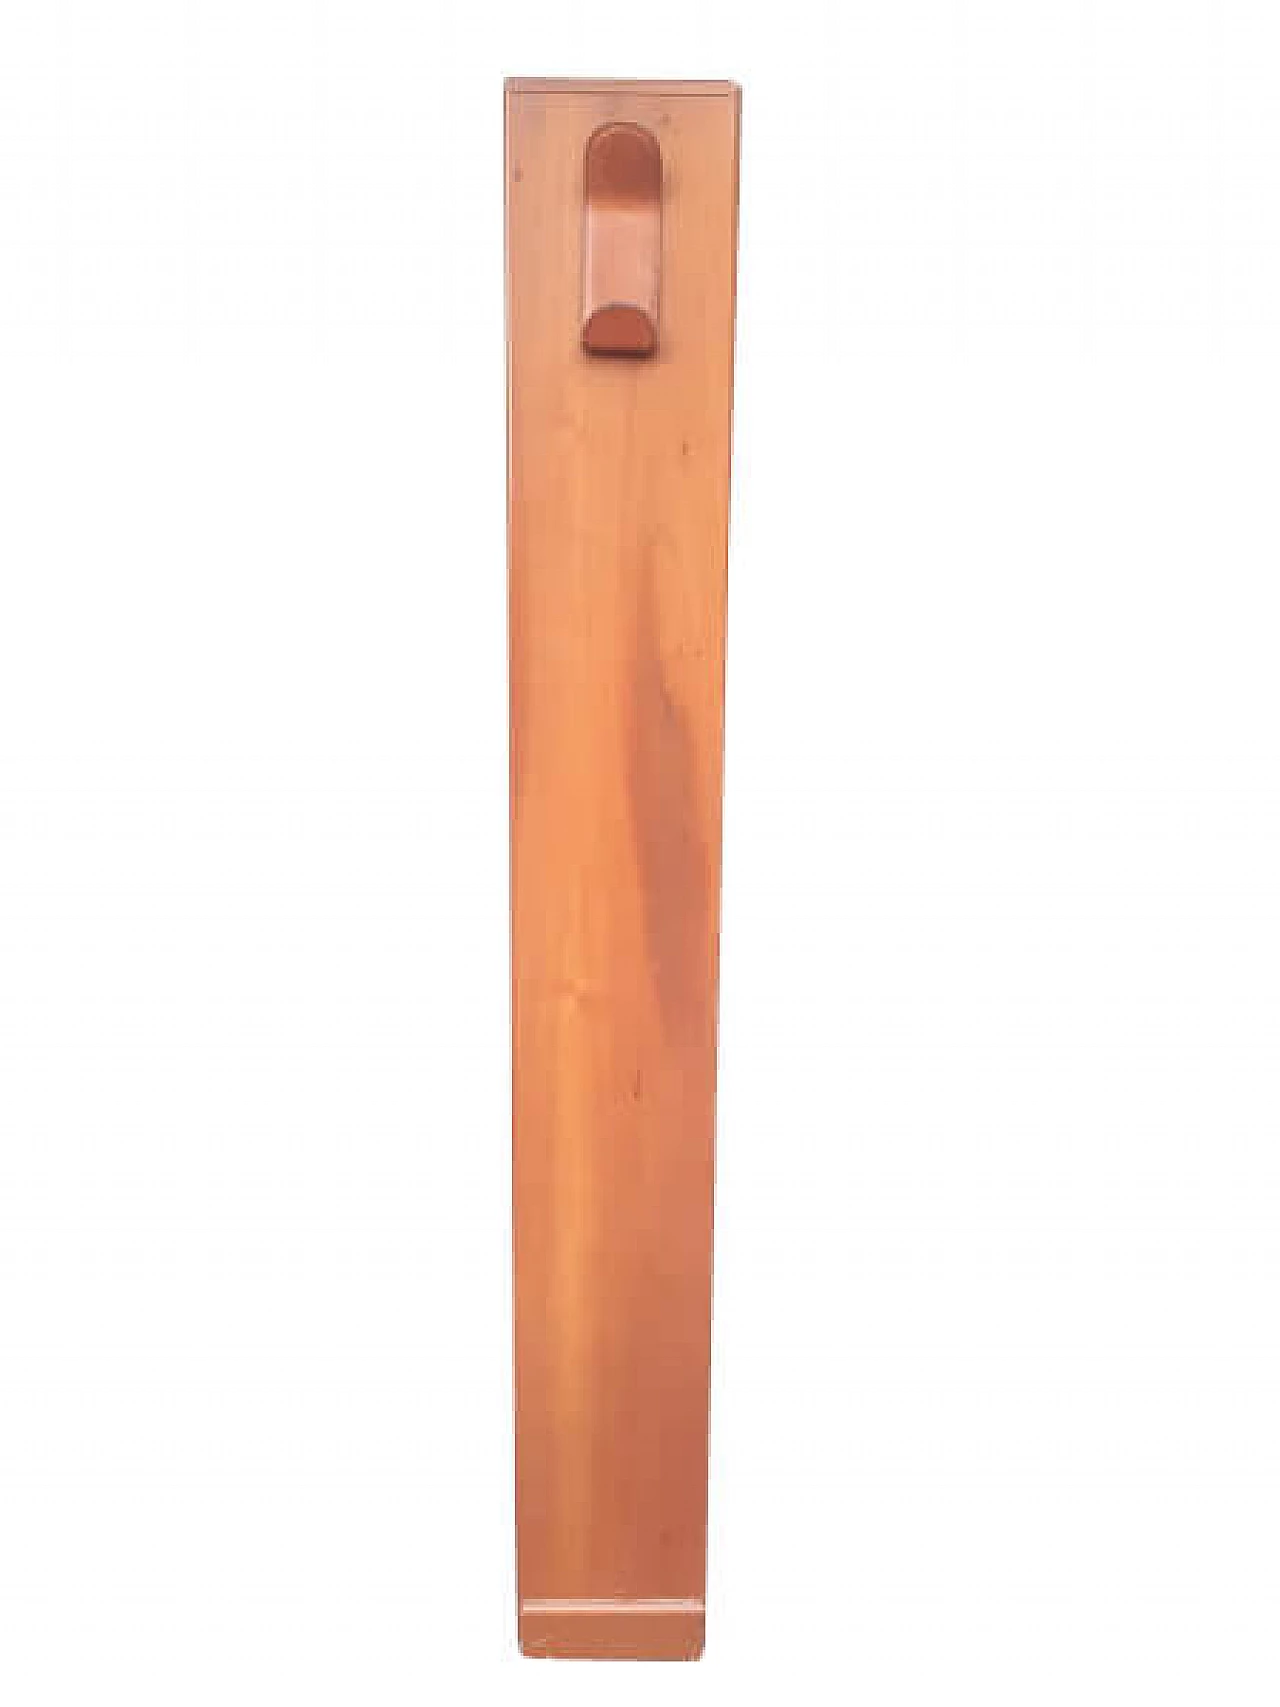 Beech wood coat rack, 50s 1253386